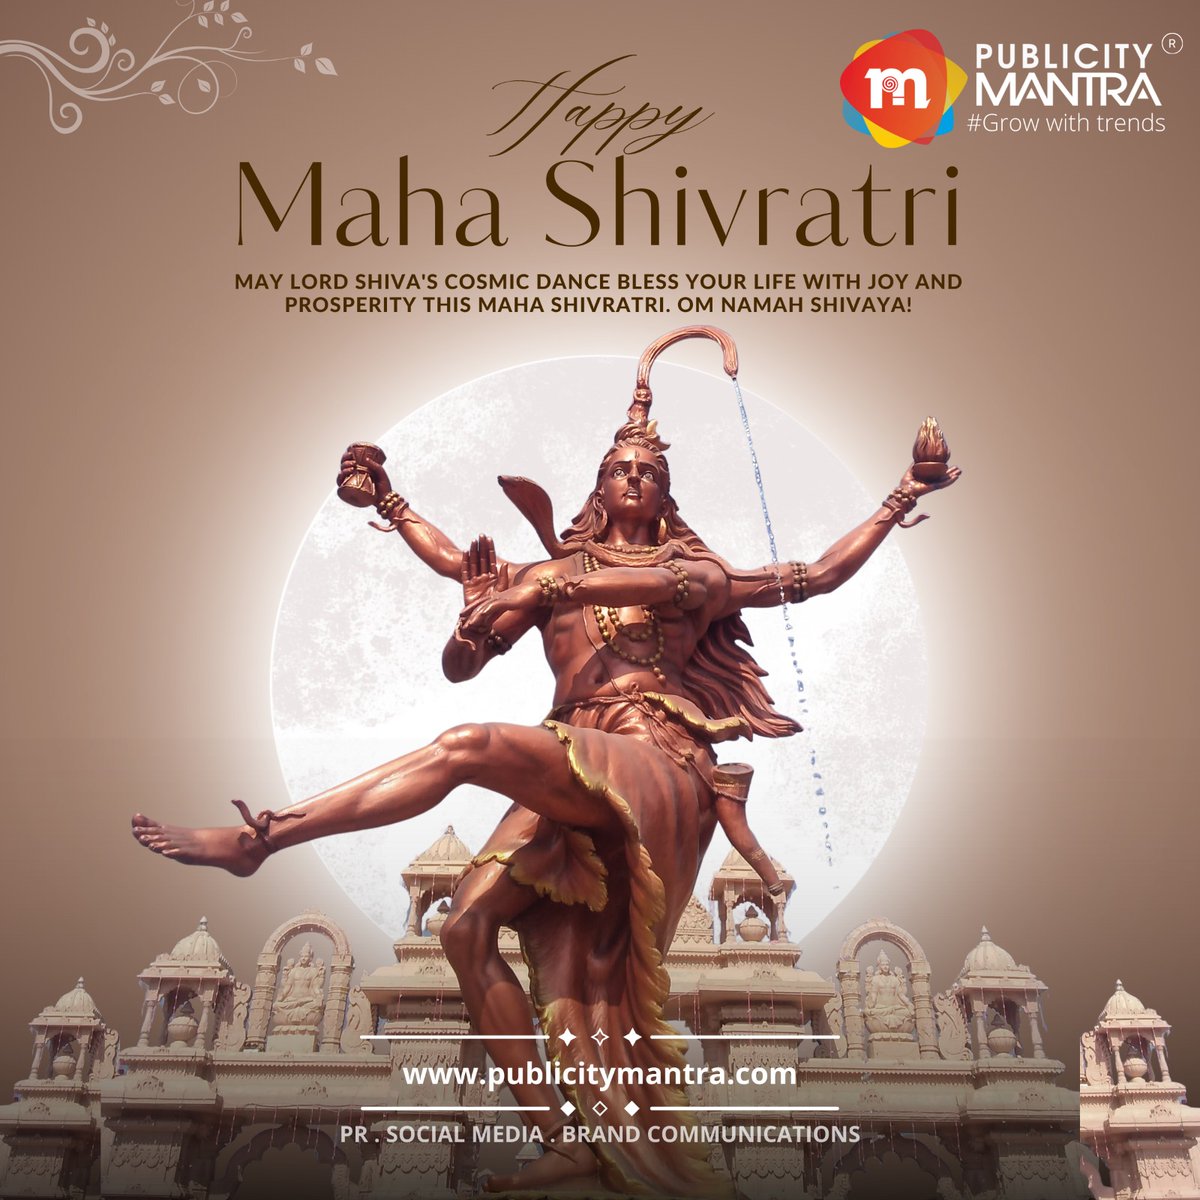 Happy Maha Shivratri

May Lord SHIVA'S cosmic dance bless your life with joy and prosperity this MAHA SHIVRATRI.
OM NAMAH SHIVAYA🙏

#HappyMahaShivaratri #PublicityMantra